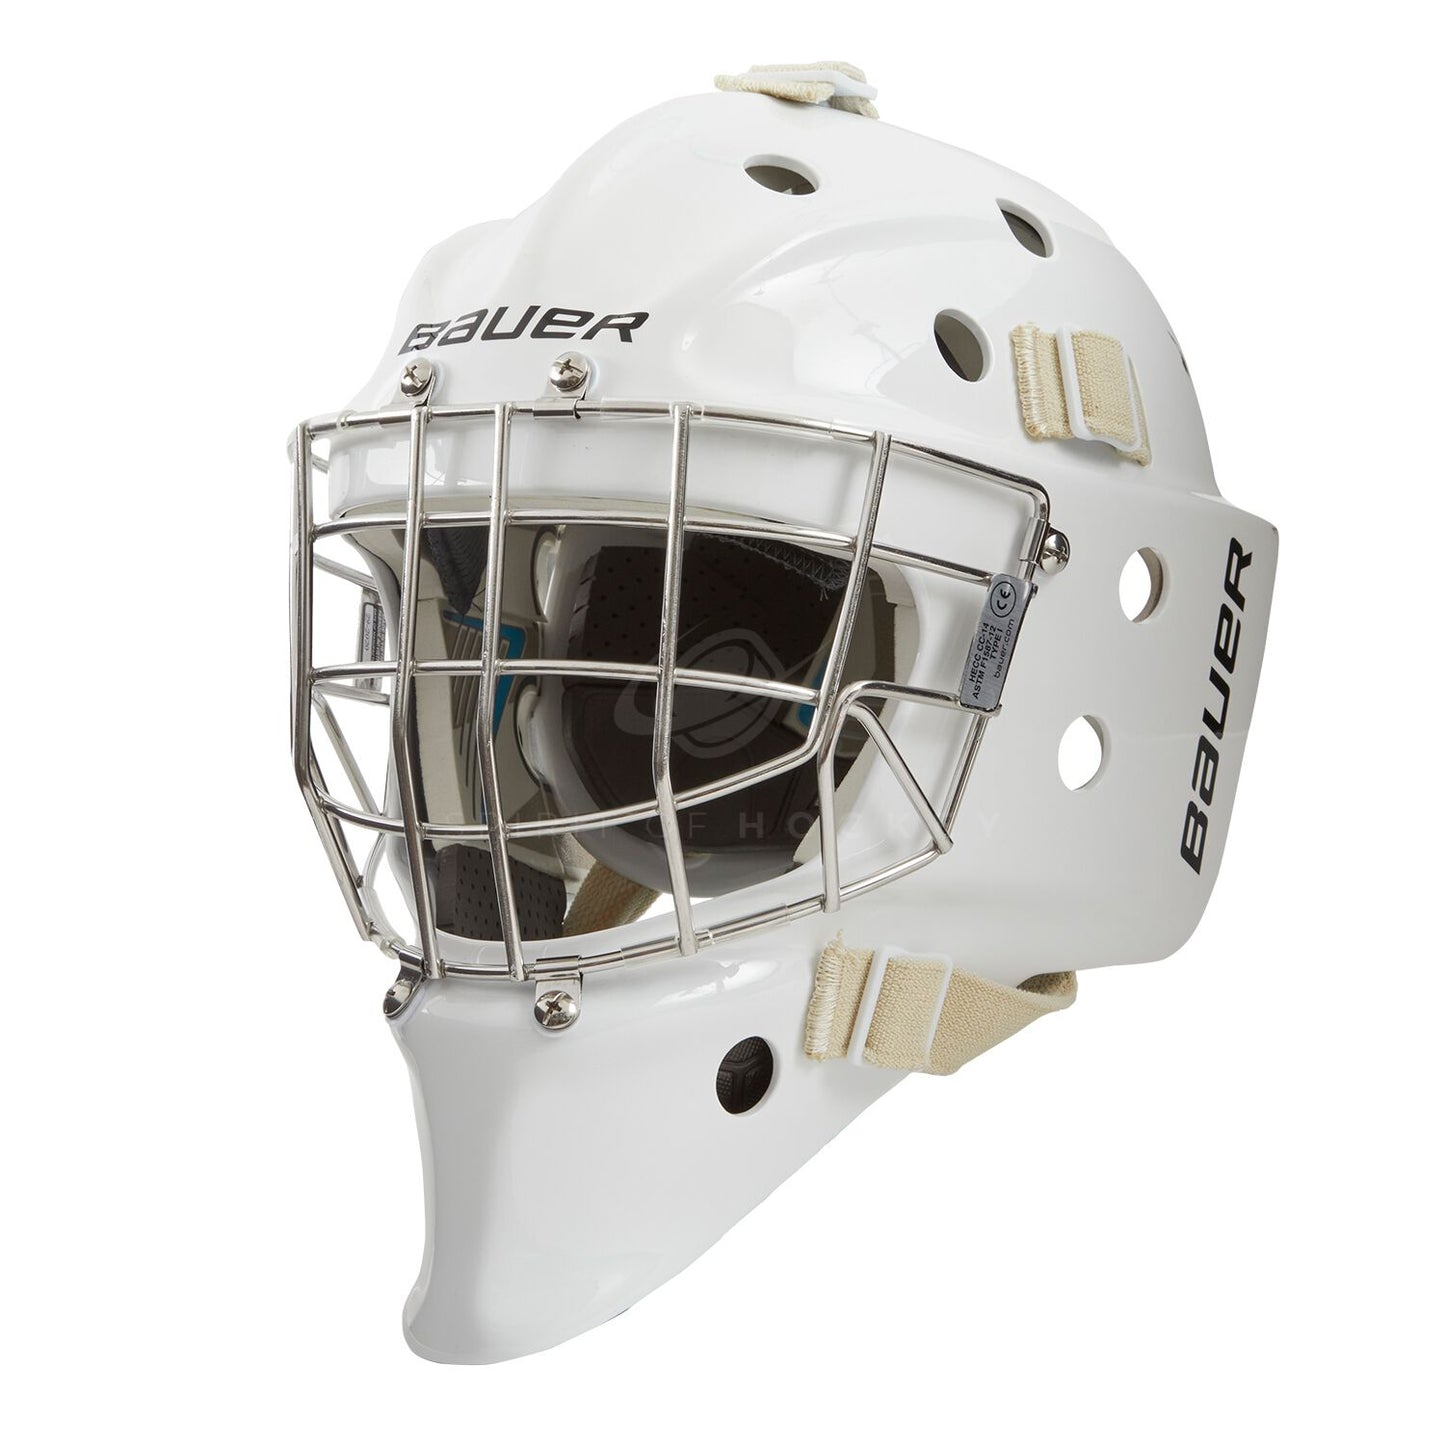 Bauer Profile 950 SR Goalie Mask